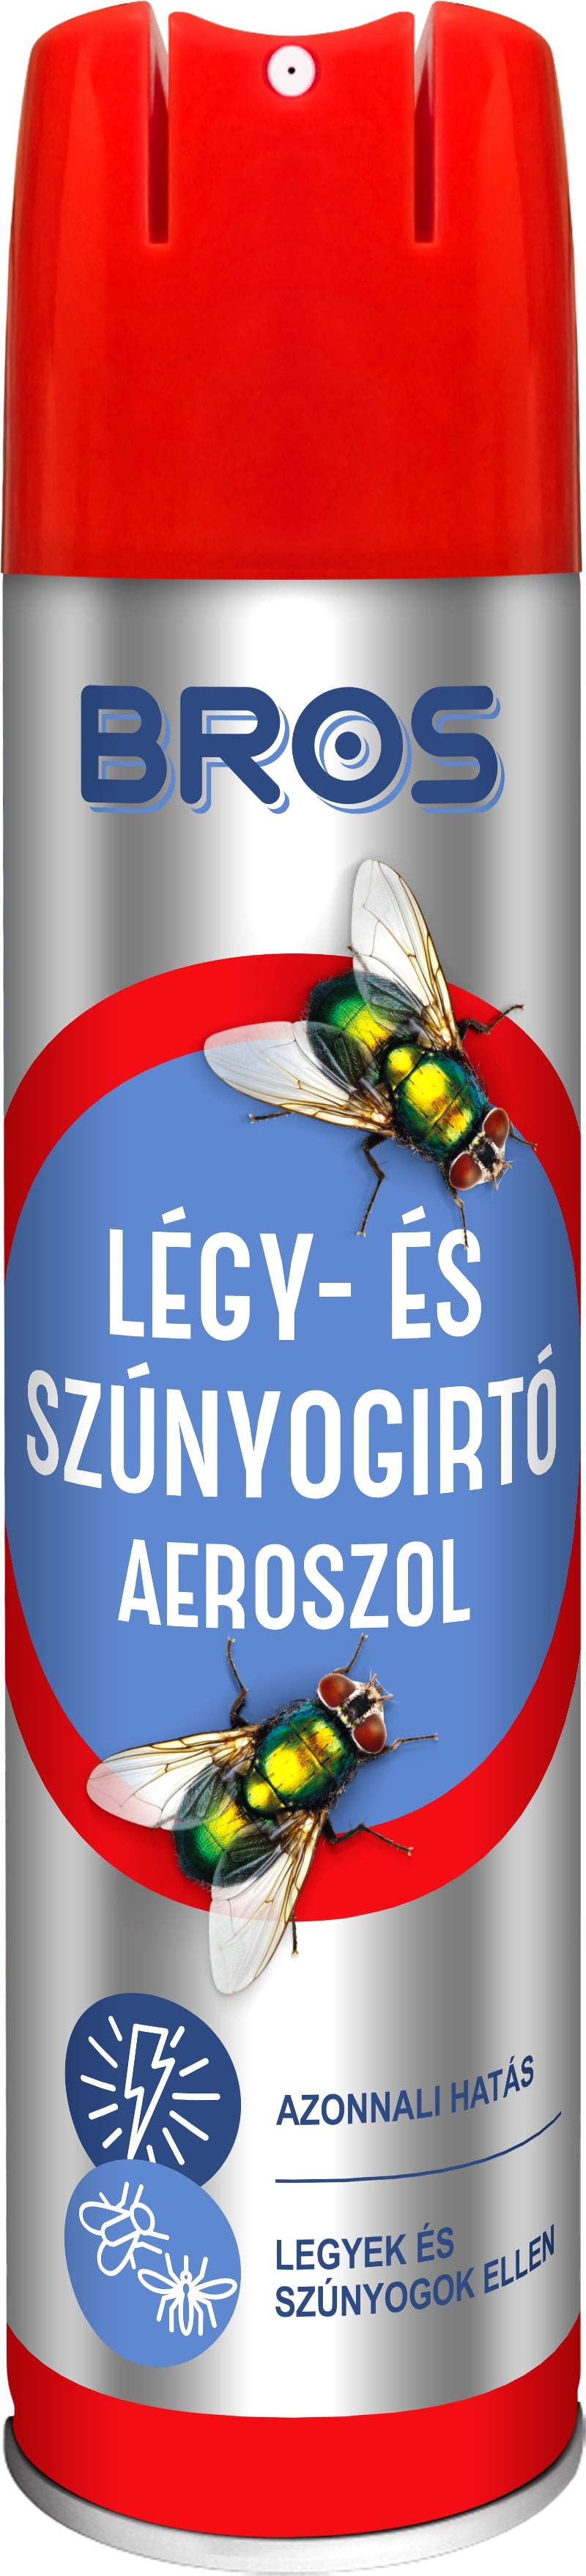 Bros Légy- és szúnyogirtó aeroszol 400ml 12 db/karton